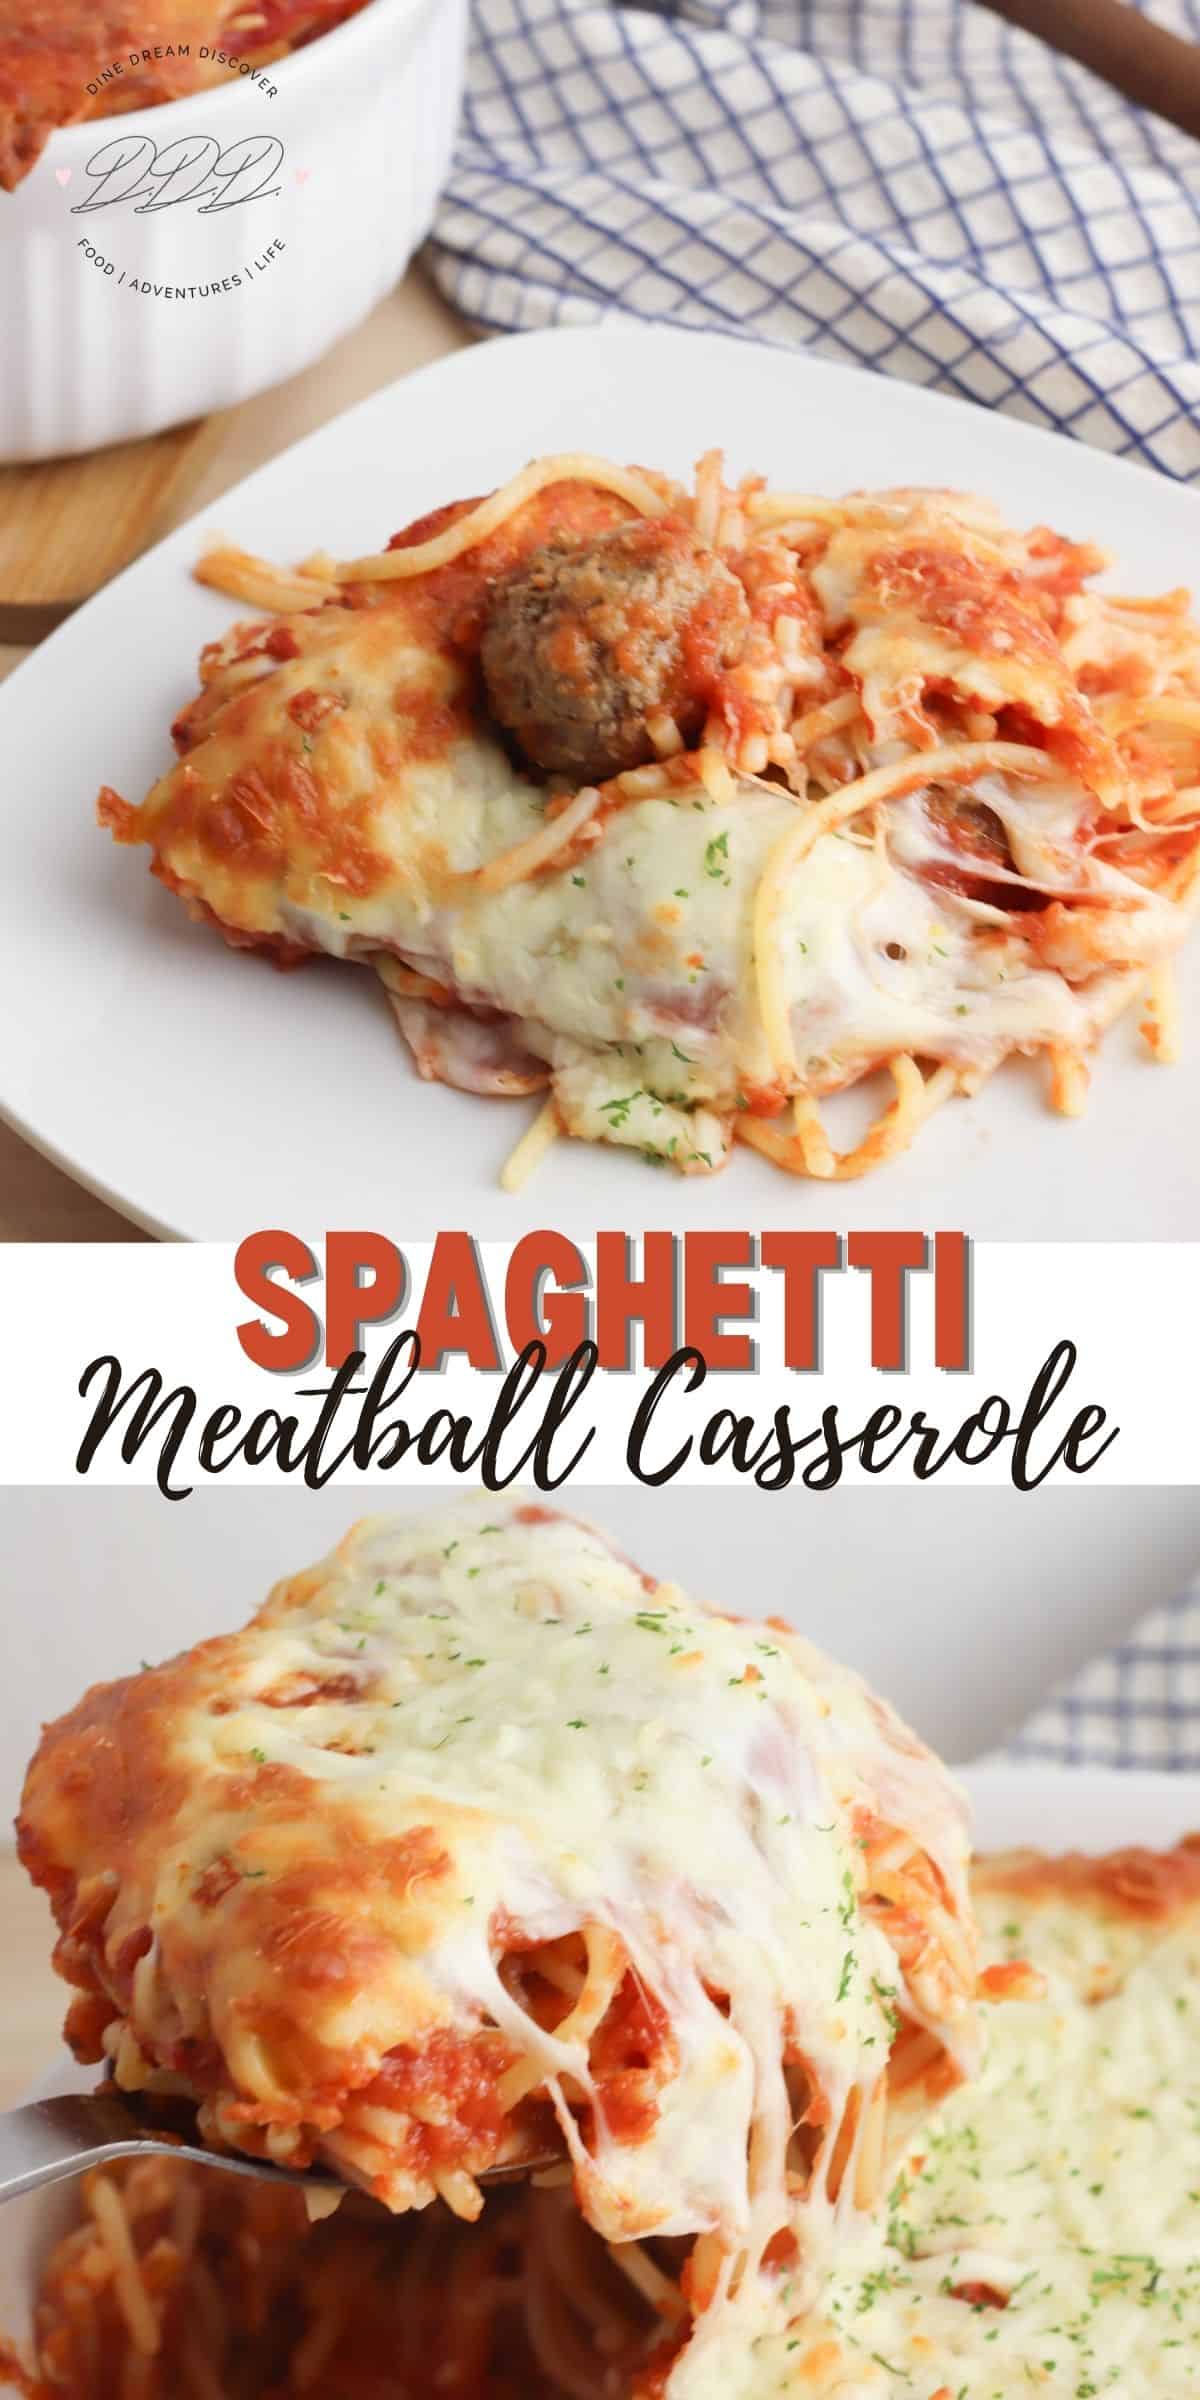 Spaghetti and Meatball Casserole 